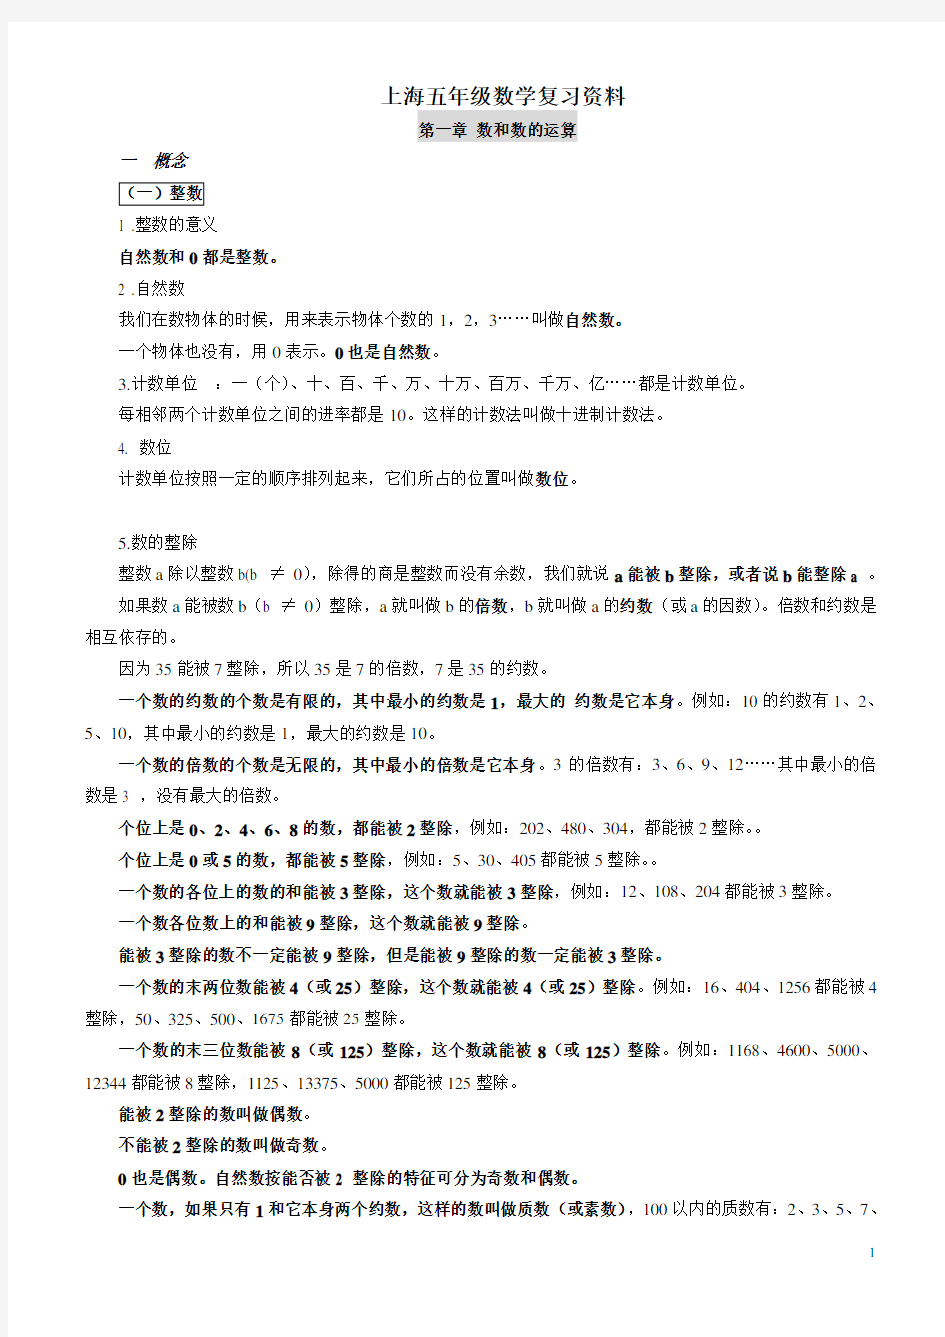 (完整word版)上海五年级数学复习资料